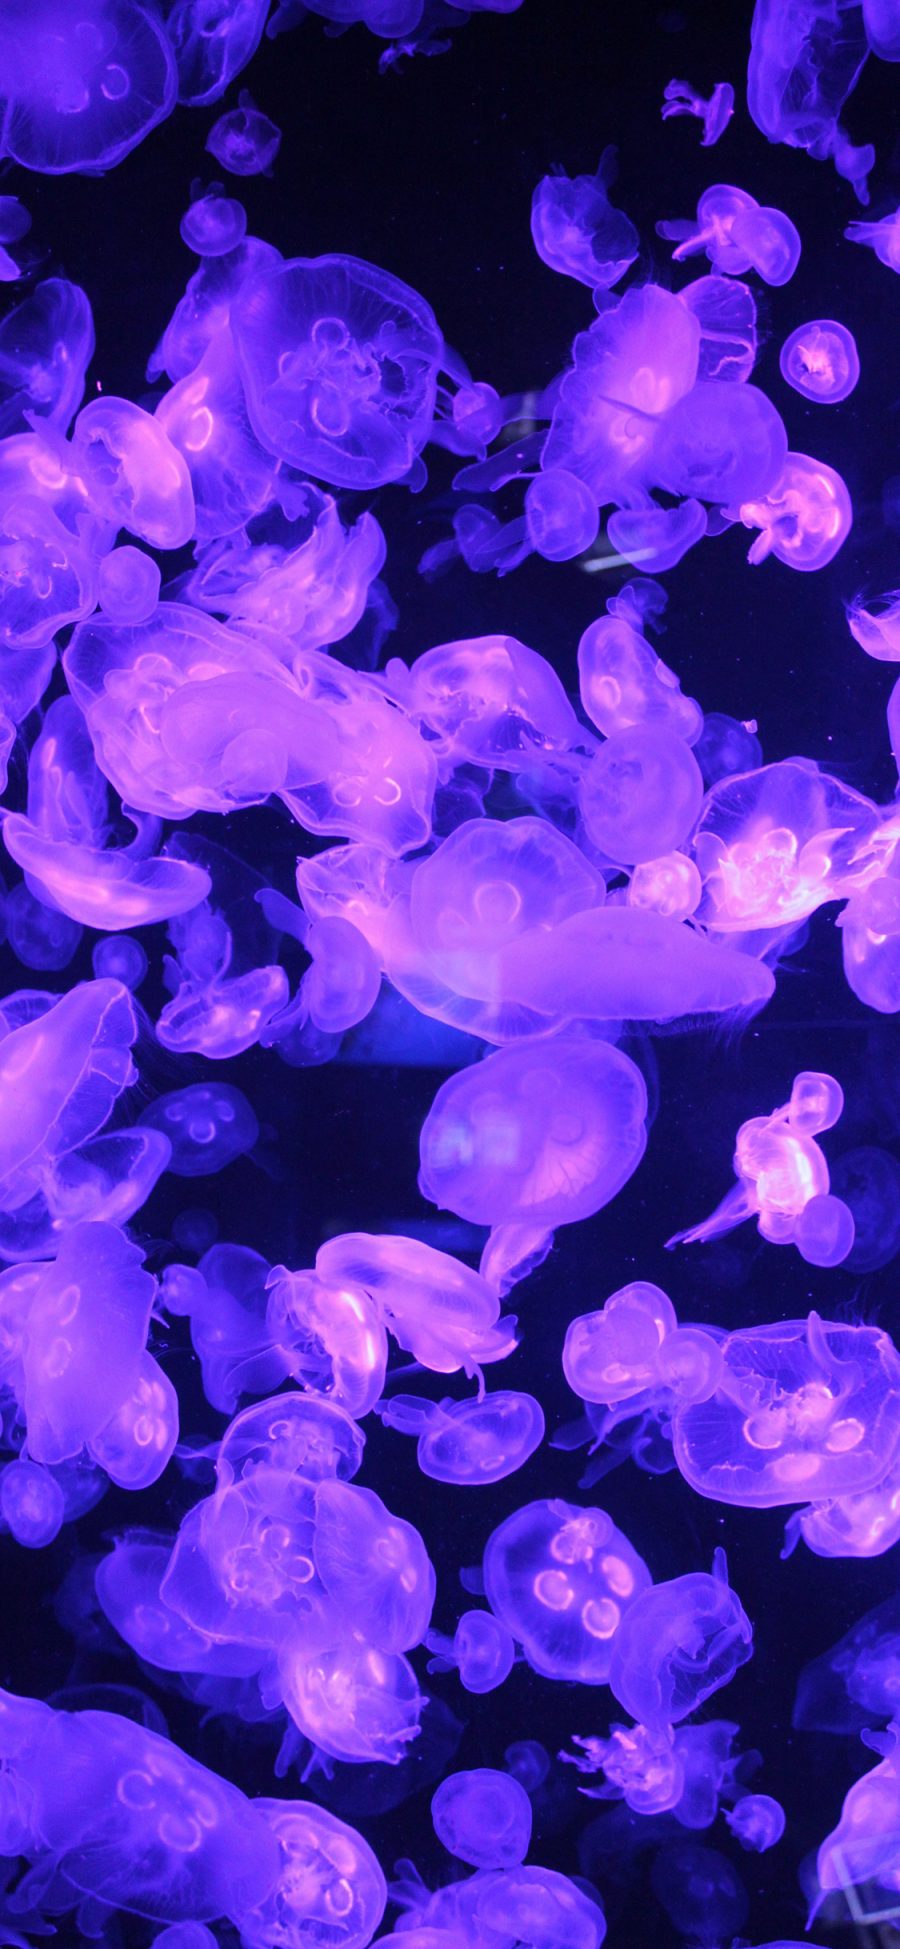 [2436×1125]水母 海洋生物 紫色 种群 透明 游动 苹果手机壁纸图片